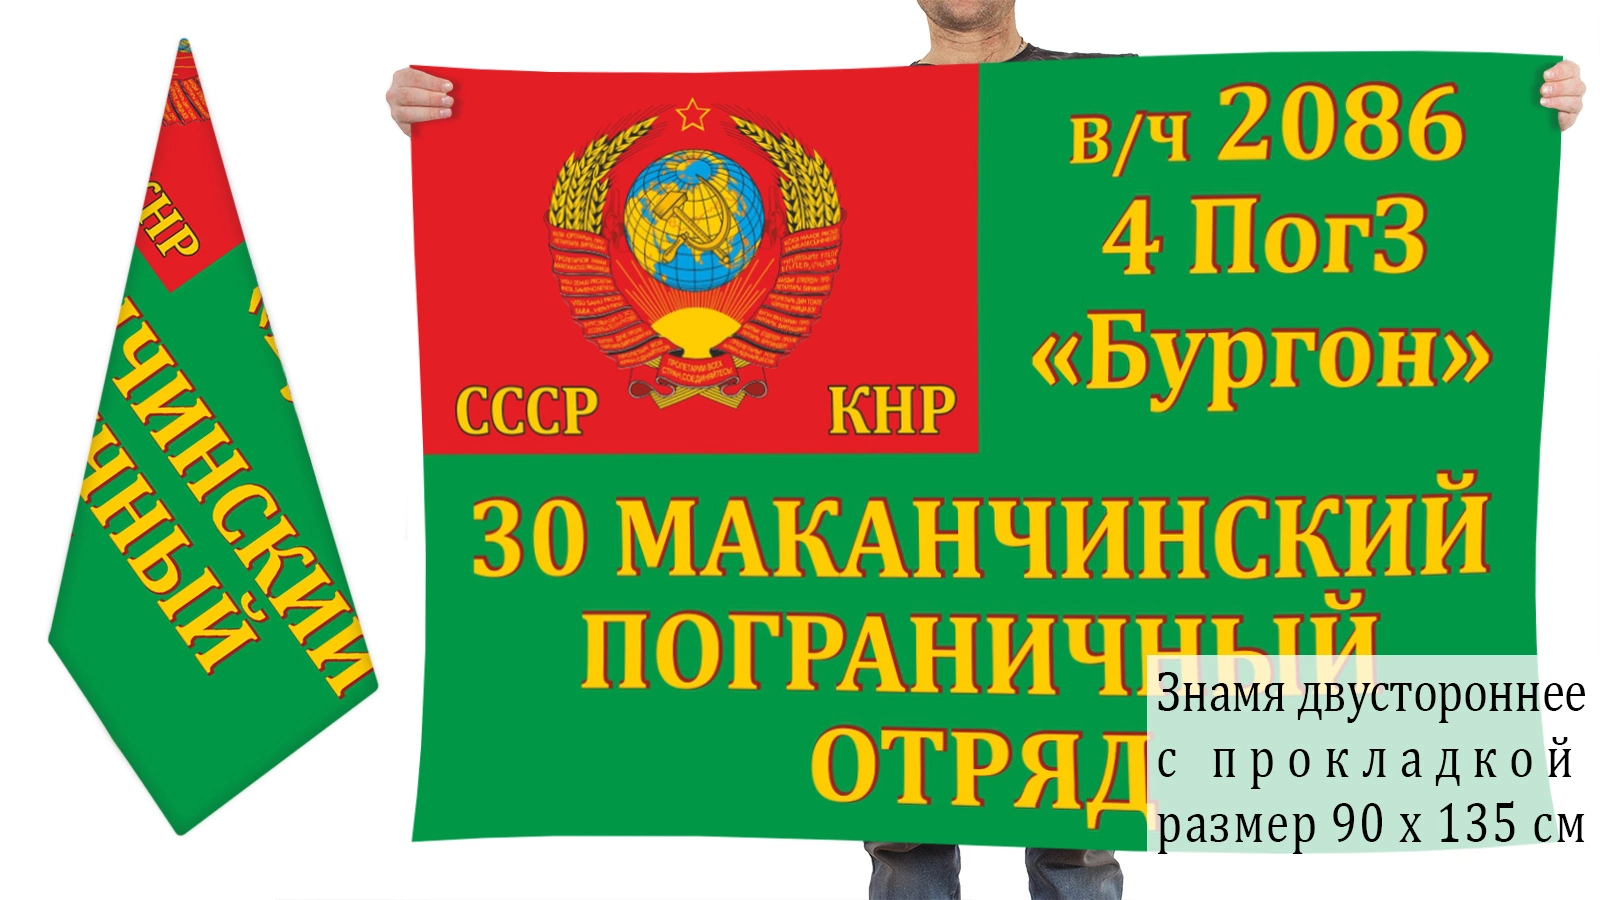 Двусторонний флаг 4 Погранзаставы "Бургон" 30 Макачинского ПОГО